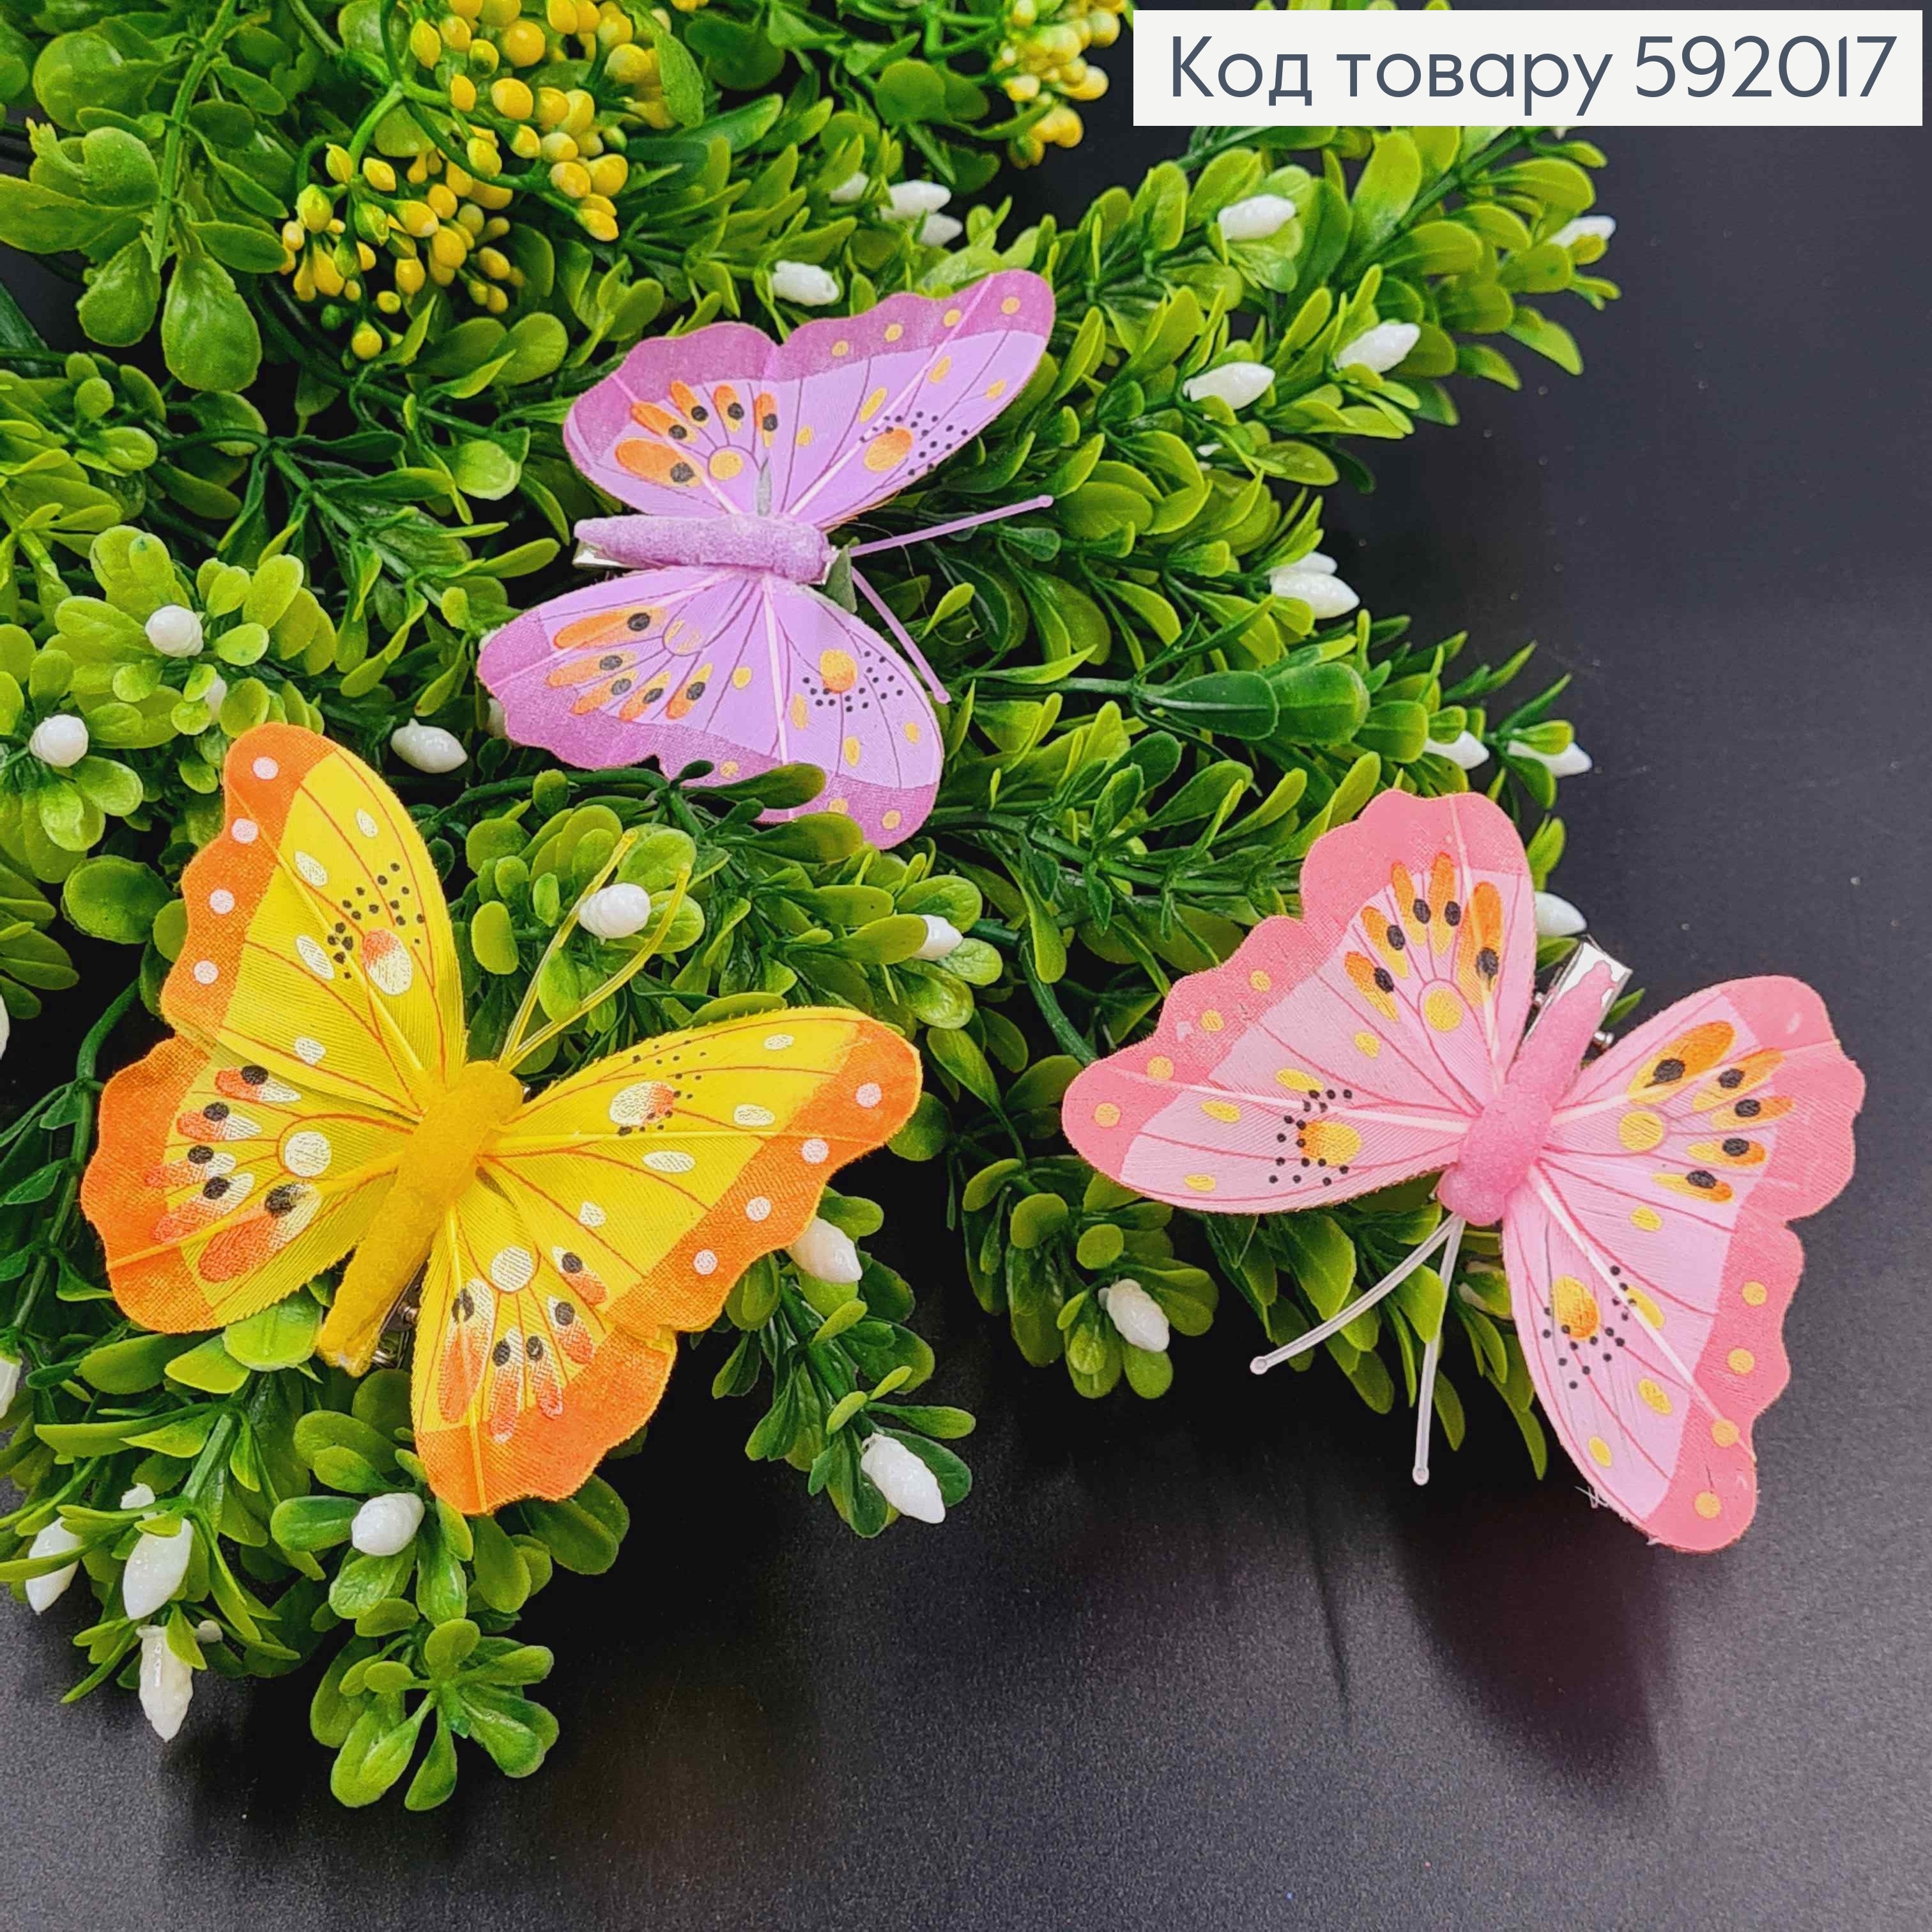 Флористическая заколка, 7см, Бабочка яркие цвета в ассорт., Польша 592017 фото 2